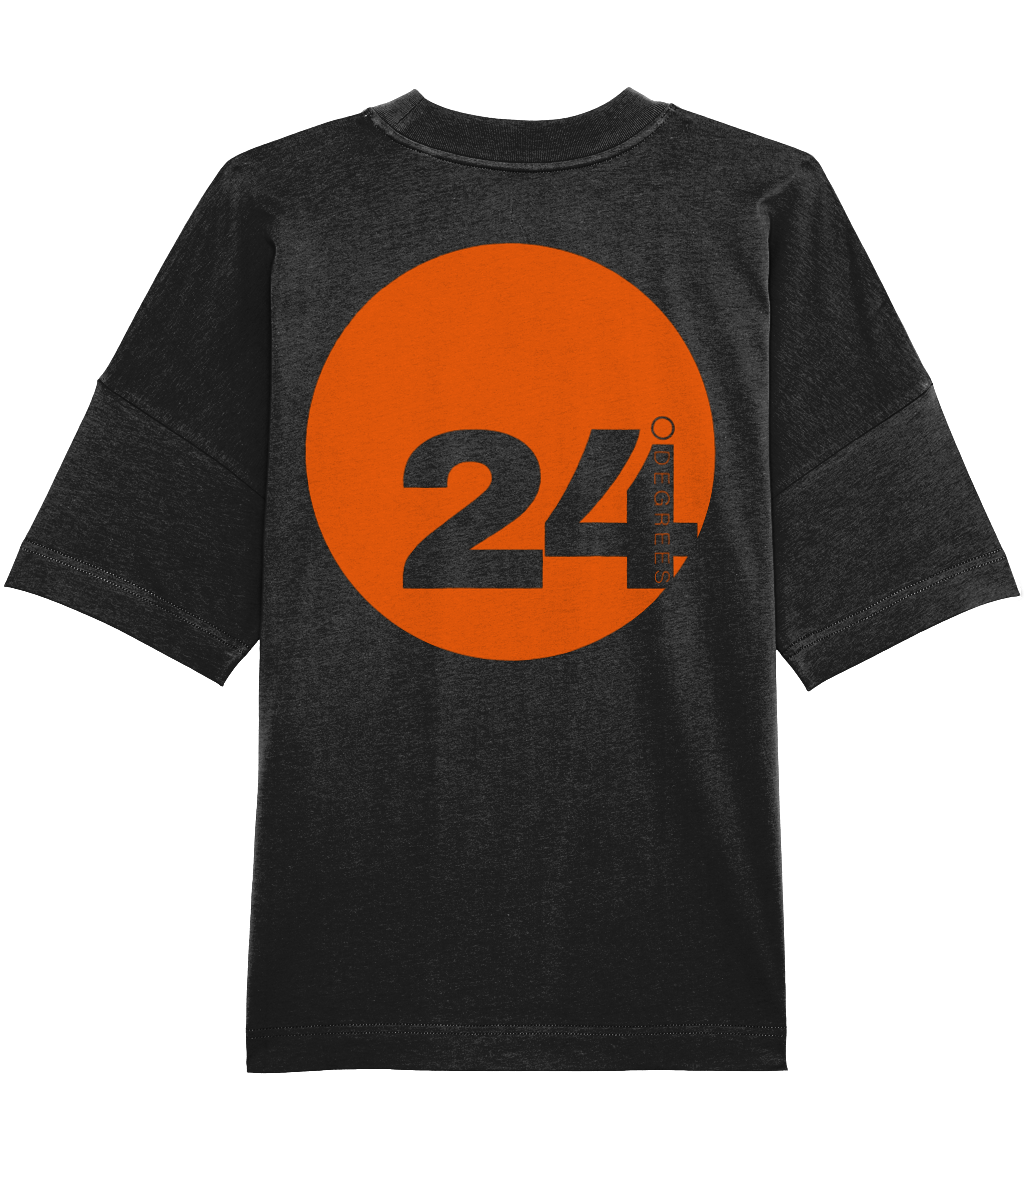 24 Degrees - Oversized with orange disc back